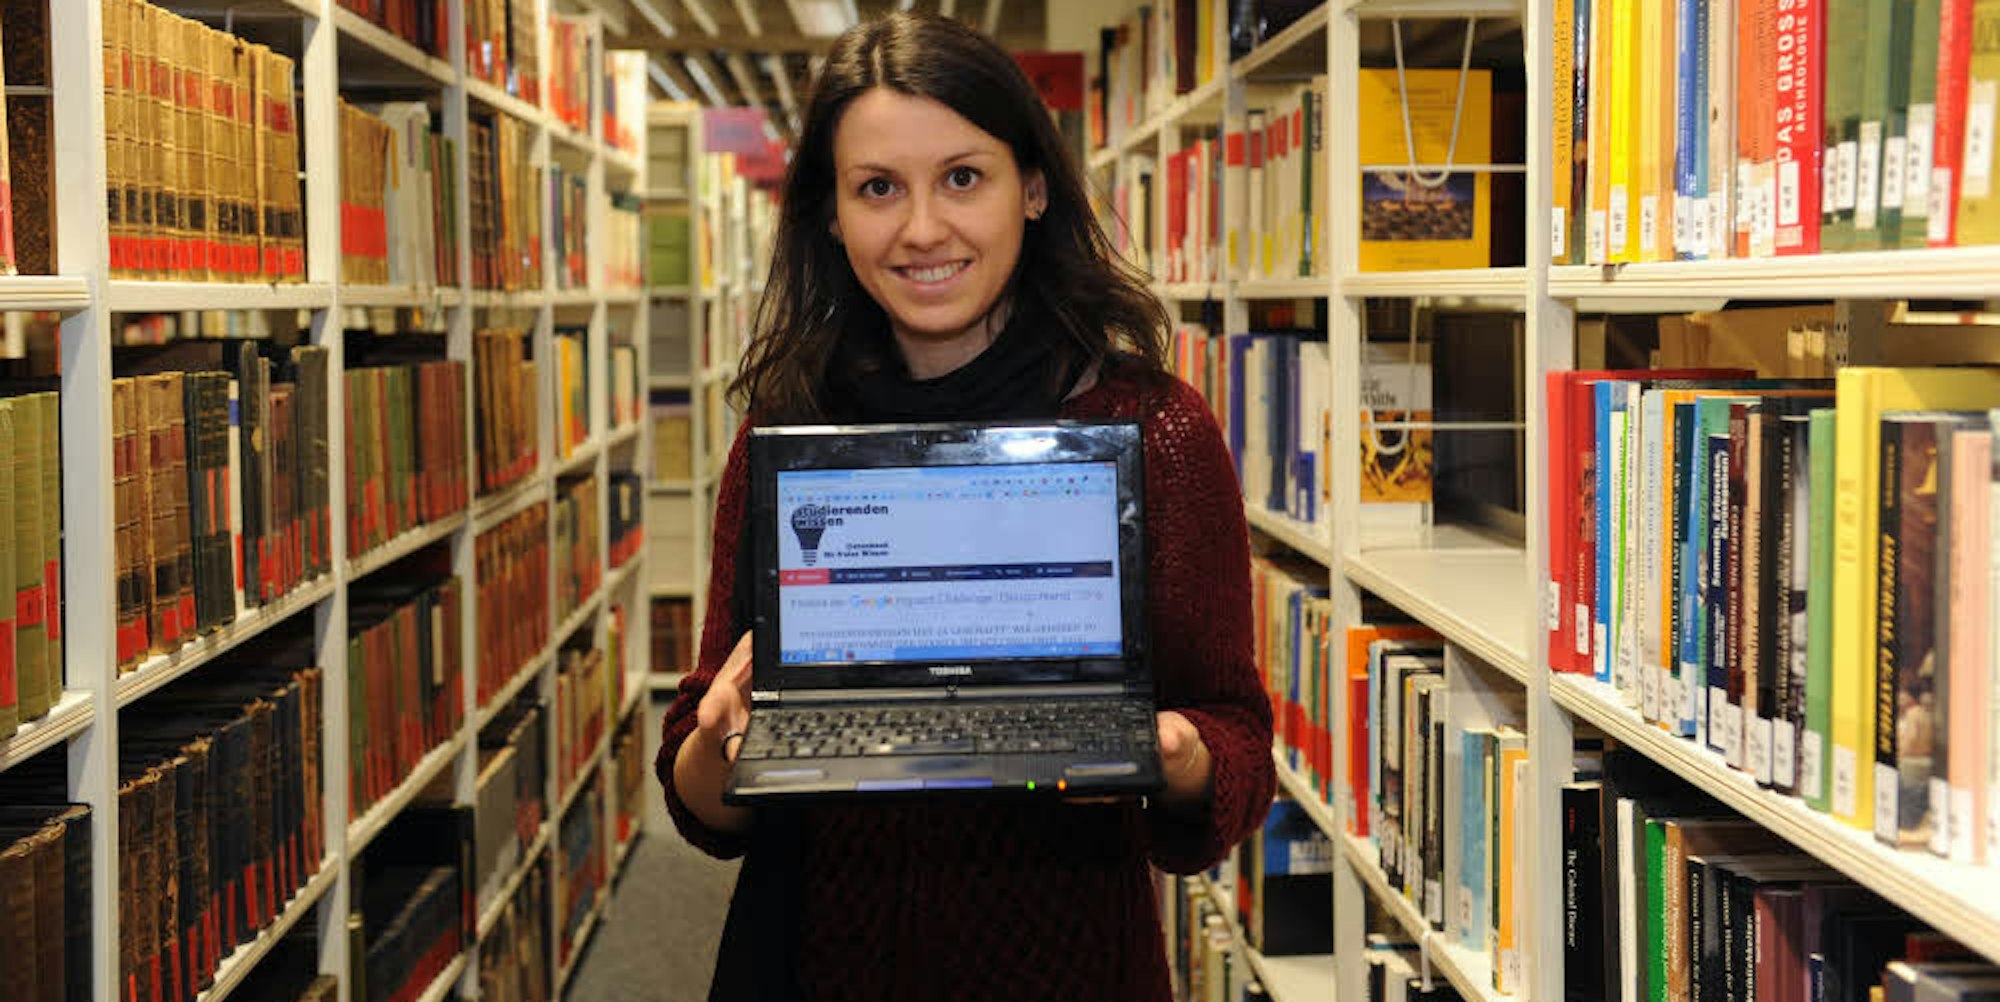 Sandra Vacca präsentiert die Startseite der Datenbank „Studierendenwissen.de“ in der Bibliothek der Historiker.